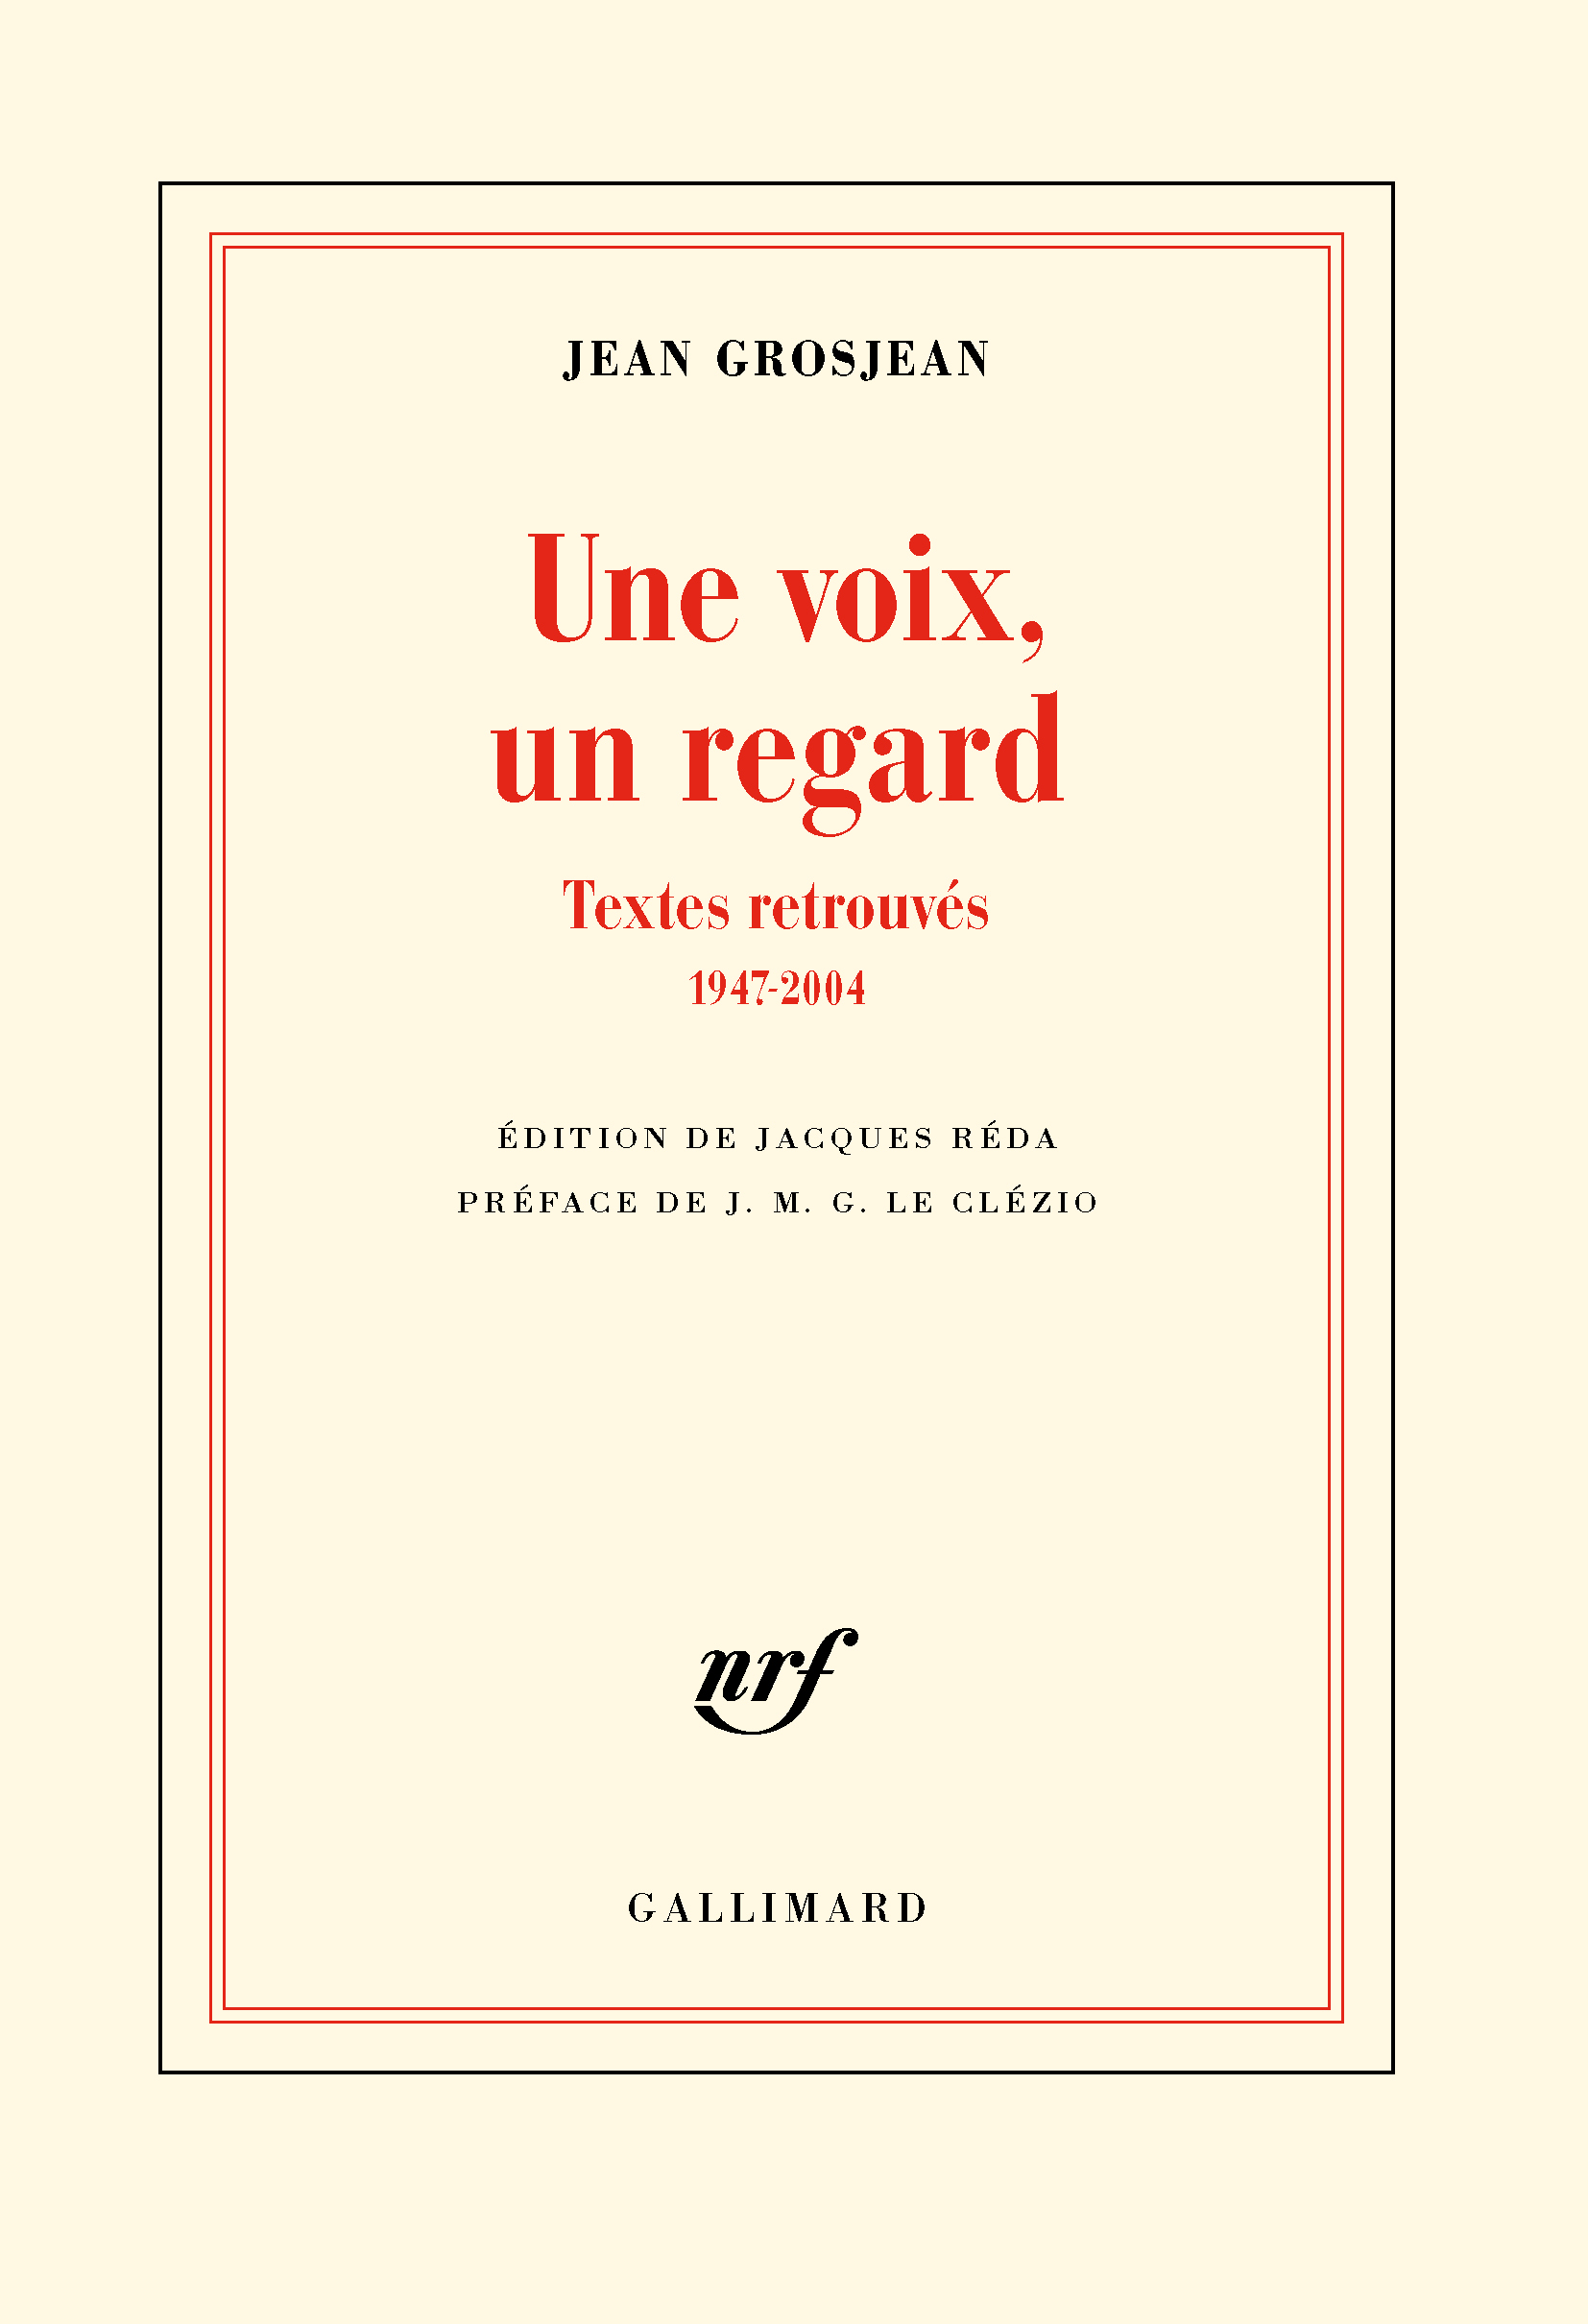 Jean Grosjean, Une voix, un regard, Textes retrouvés (1947-2004), réunis par J. Réda, préface de JMG Le Clézio, Gallimard, 20012, 490 pages, 26 euros